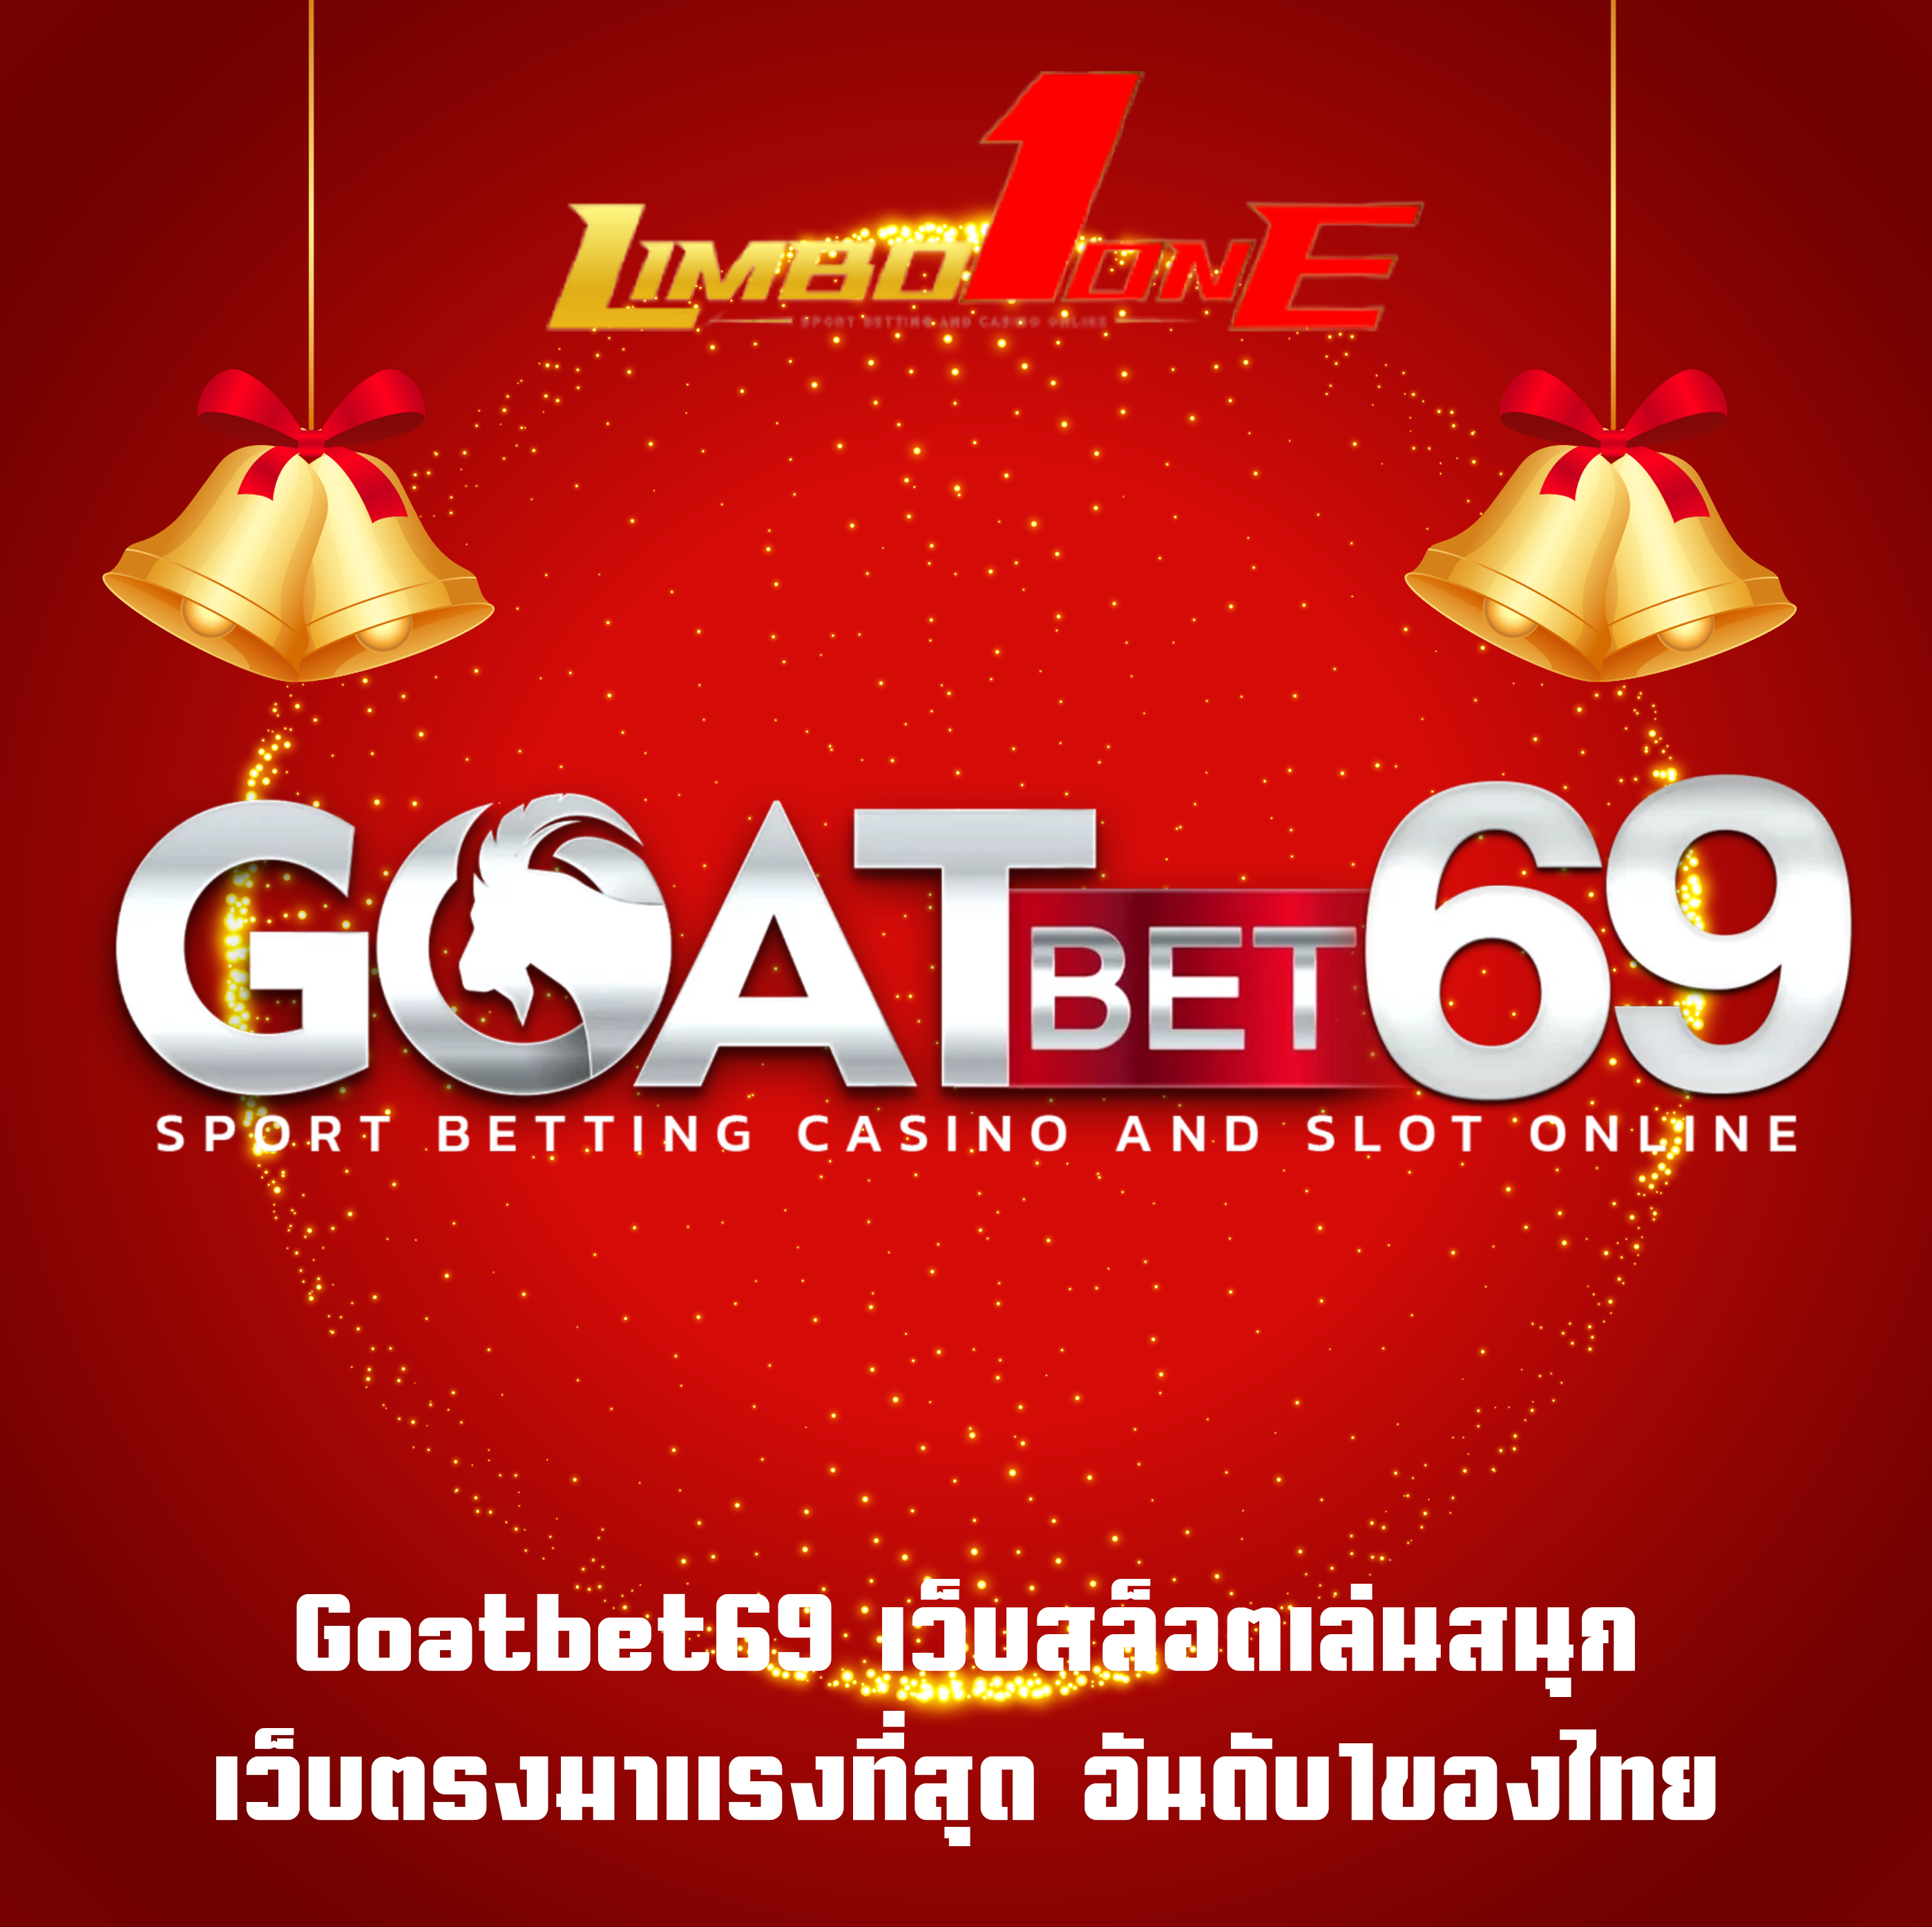 Goatbet69 เว็บสล็อตเล่นสนุก เว็บตรงมาแรงที่สุด อันดับ1ของไทย